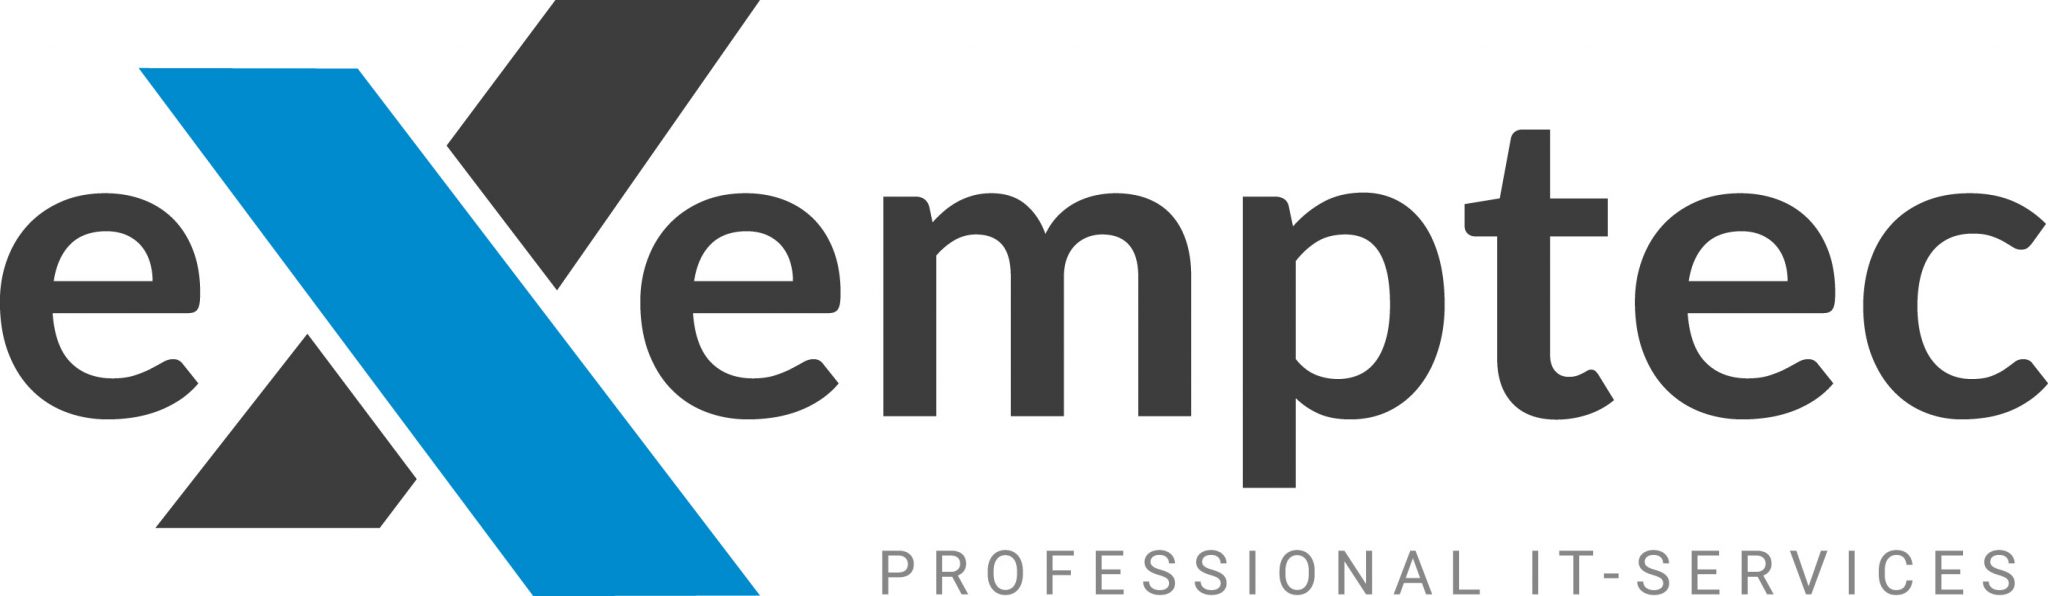 eXemptec Logo-